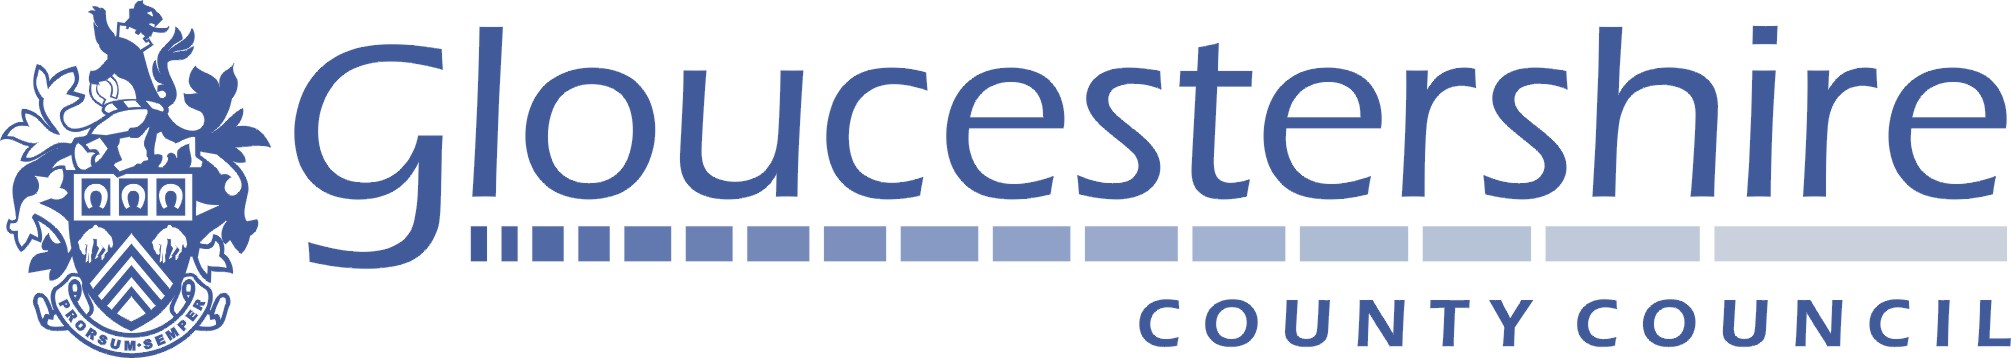 GCC-logo-colour.jpg